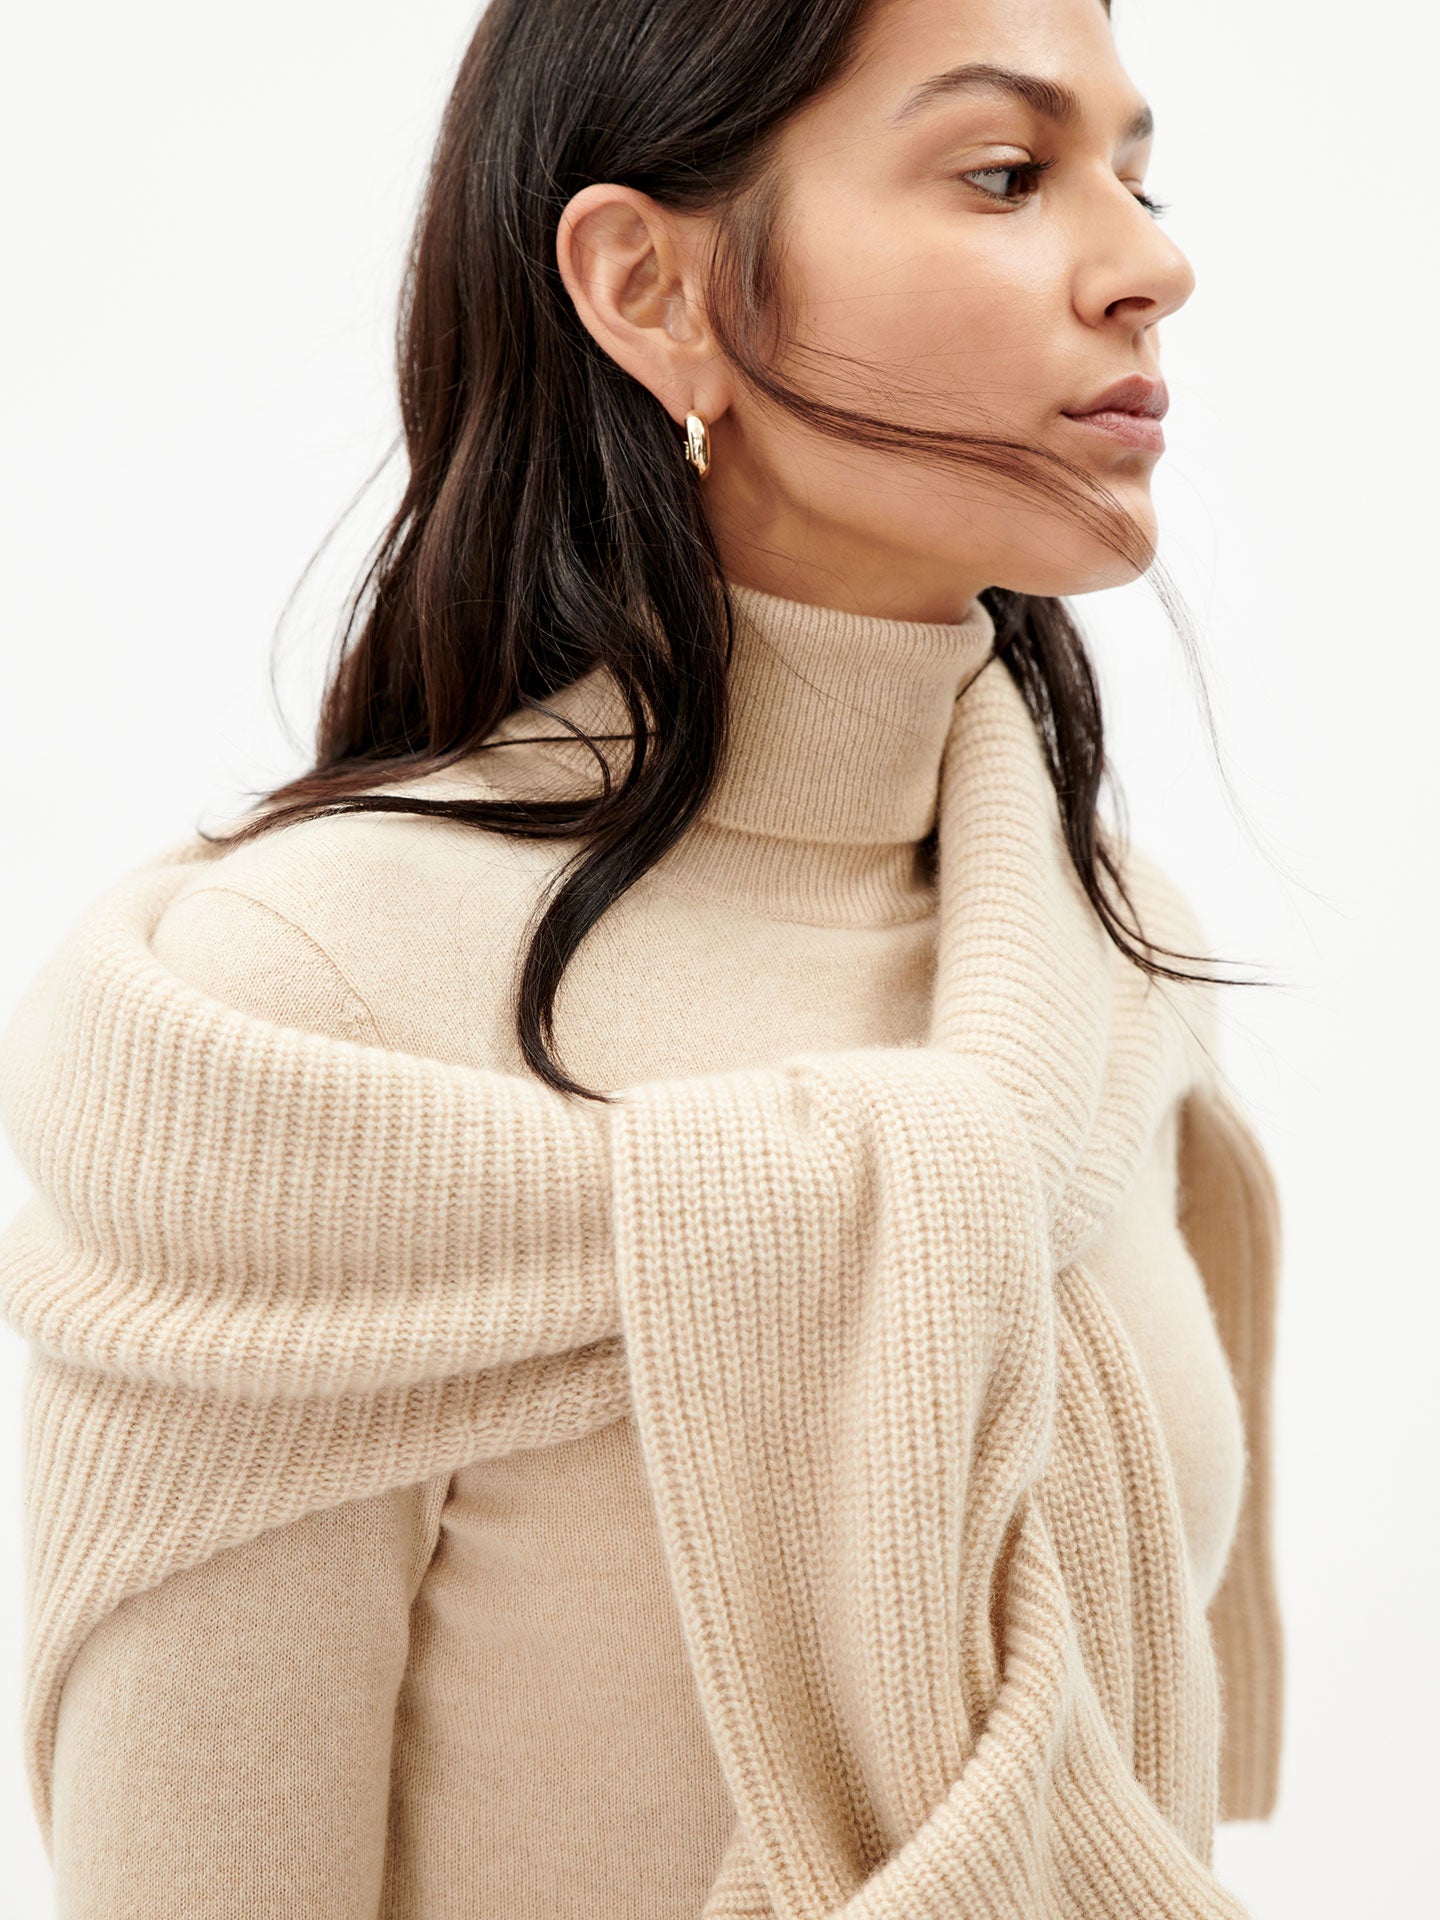 Women's Cashmere Basic Turtle Neck Sweater Beige - Gobi Cashmere